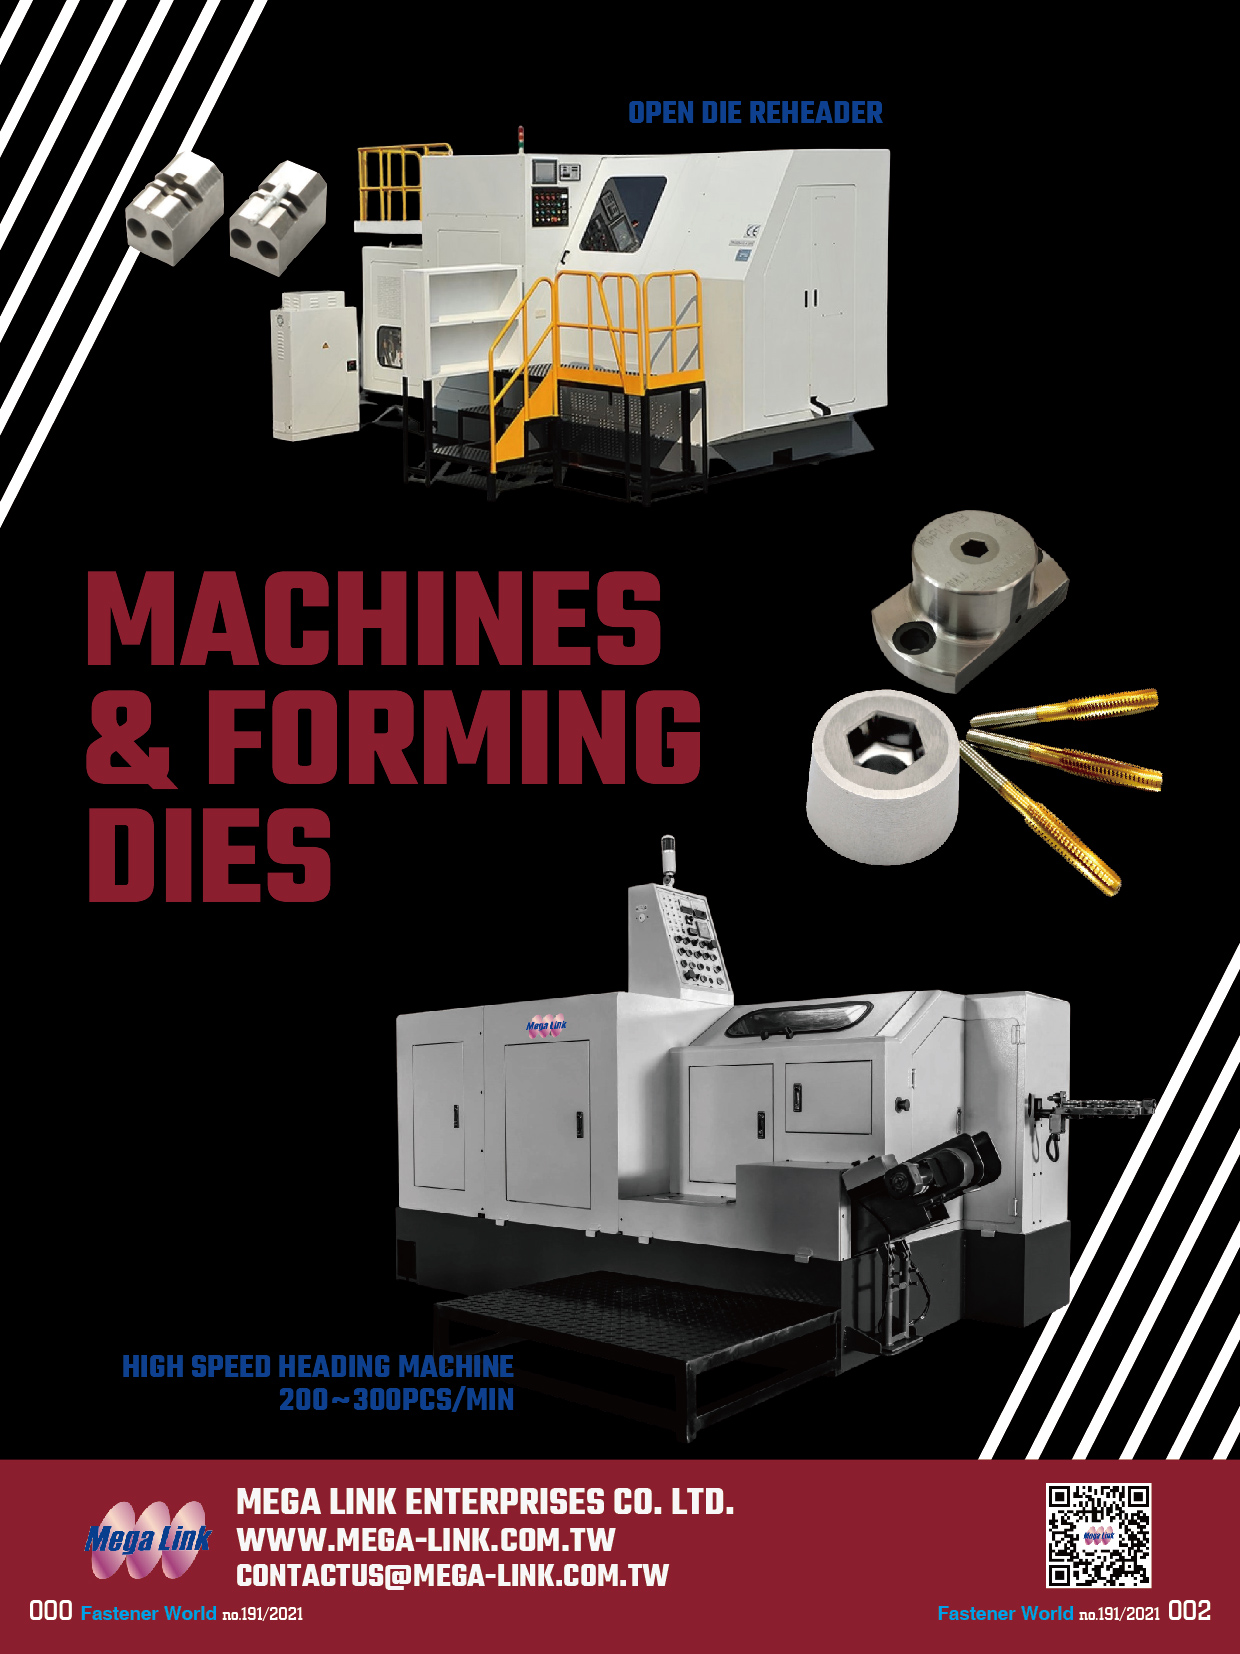 MEGA LINK ENTERPRISES CO., LTD.  , Machines & Forming Dies, Open Die Reheader, High Speed Heading Machine